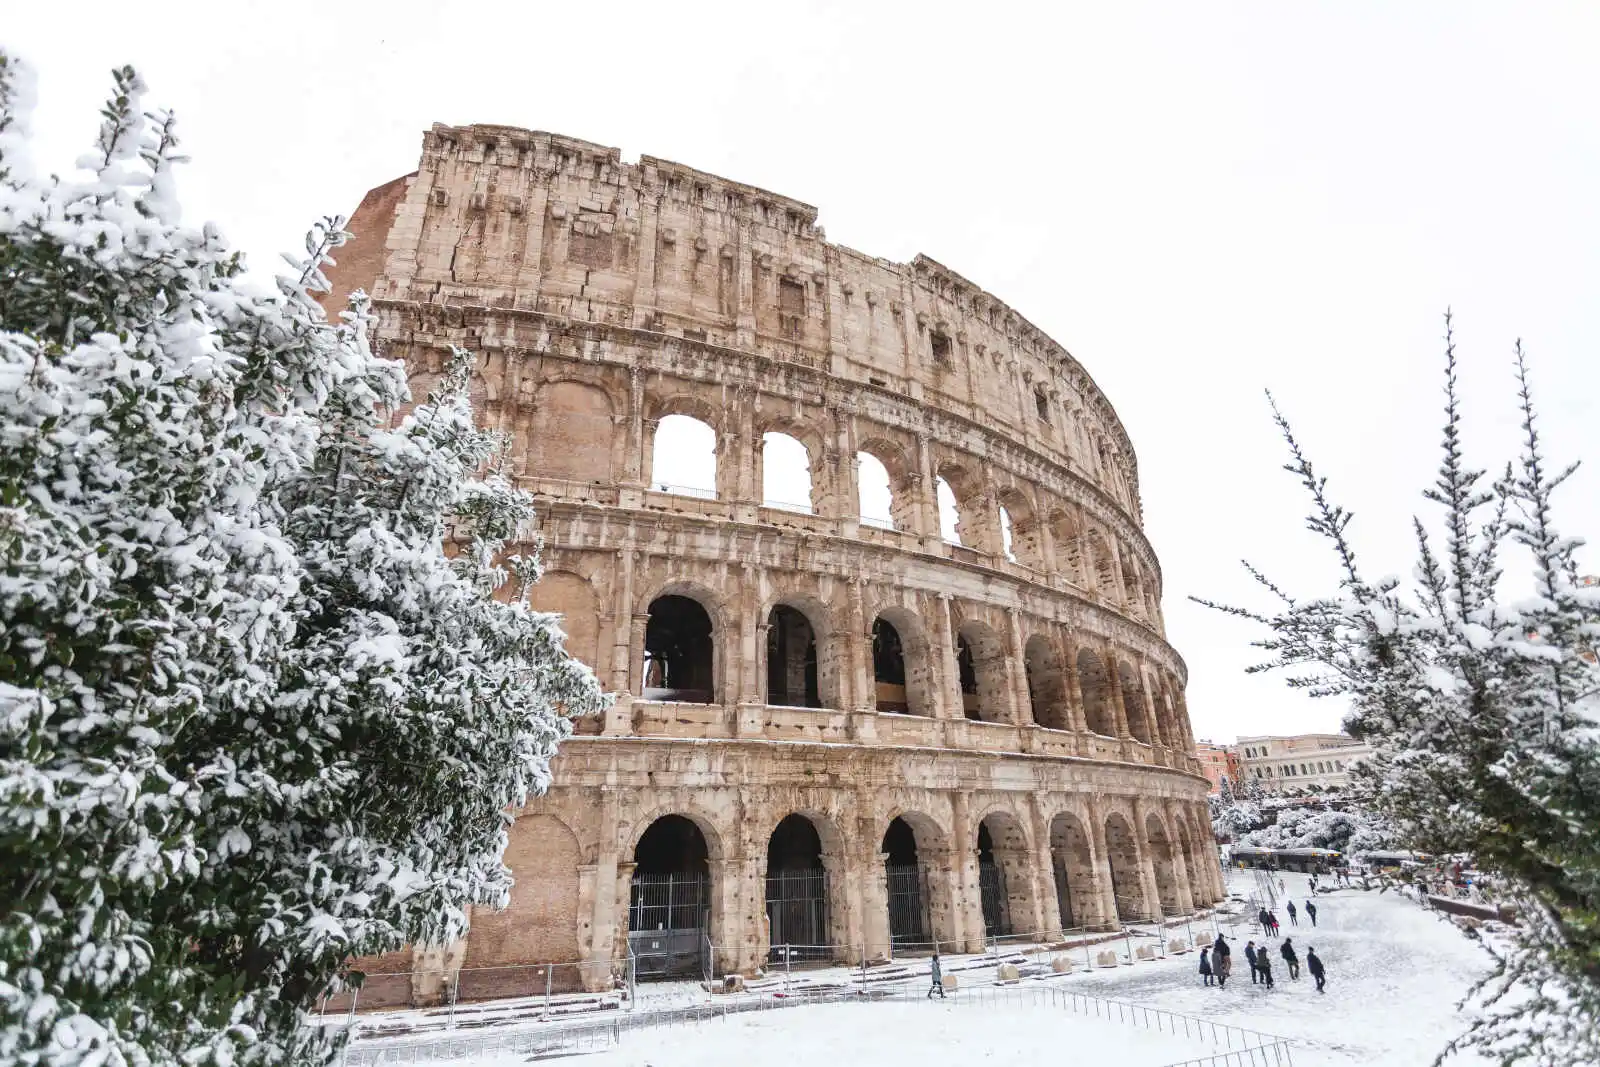 Italie - Rome - Rome, ville éternelle - Spécial Noël